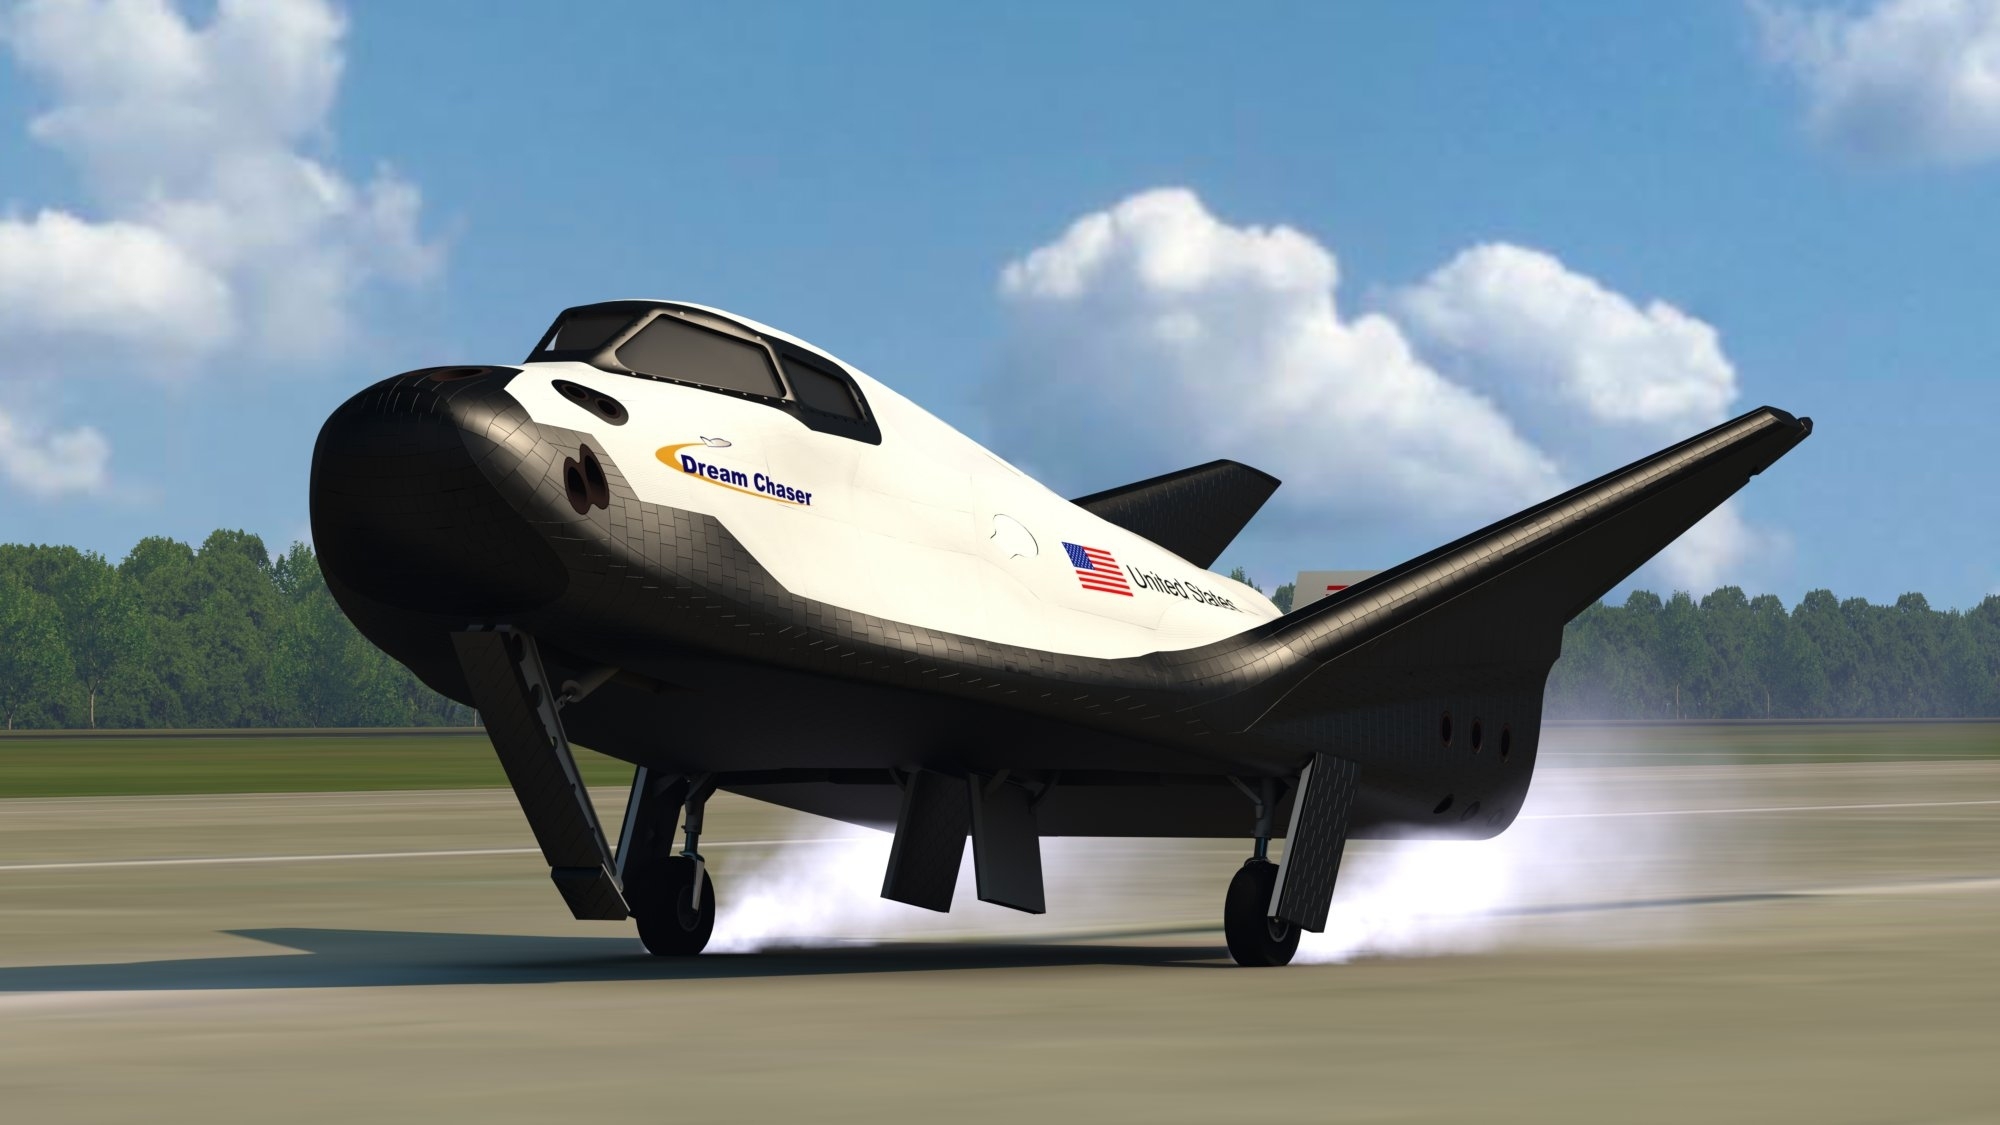 Х 37 б. Космический корабль Дрим Чейзер. Космический челнок Dream Chaser. Космический самолет Dream Chaser. Dream Chaser Бор-4.